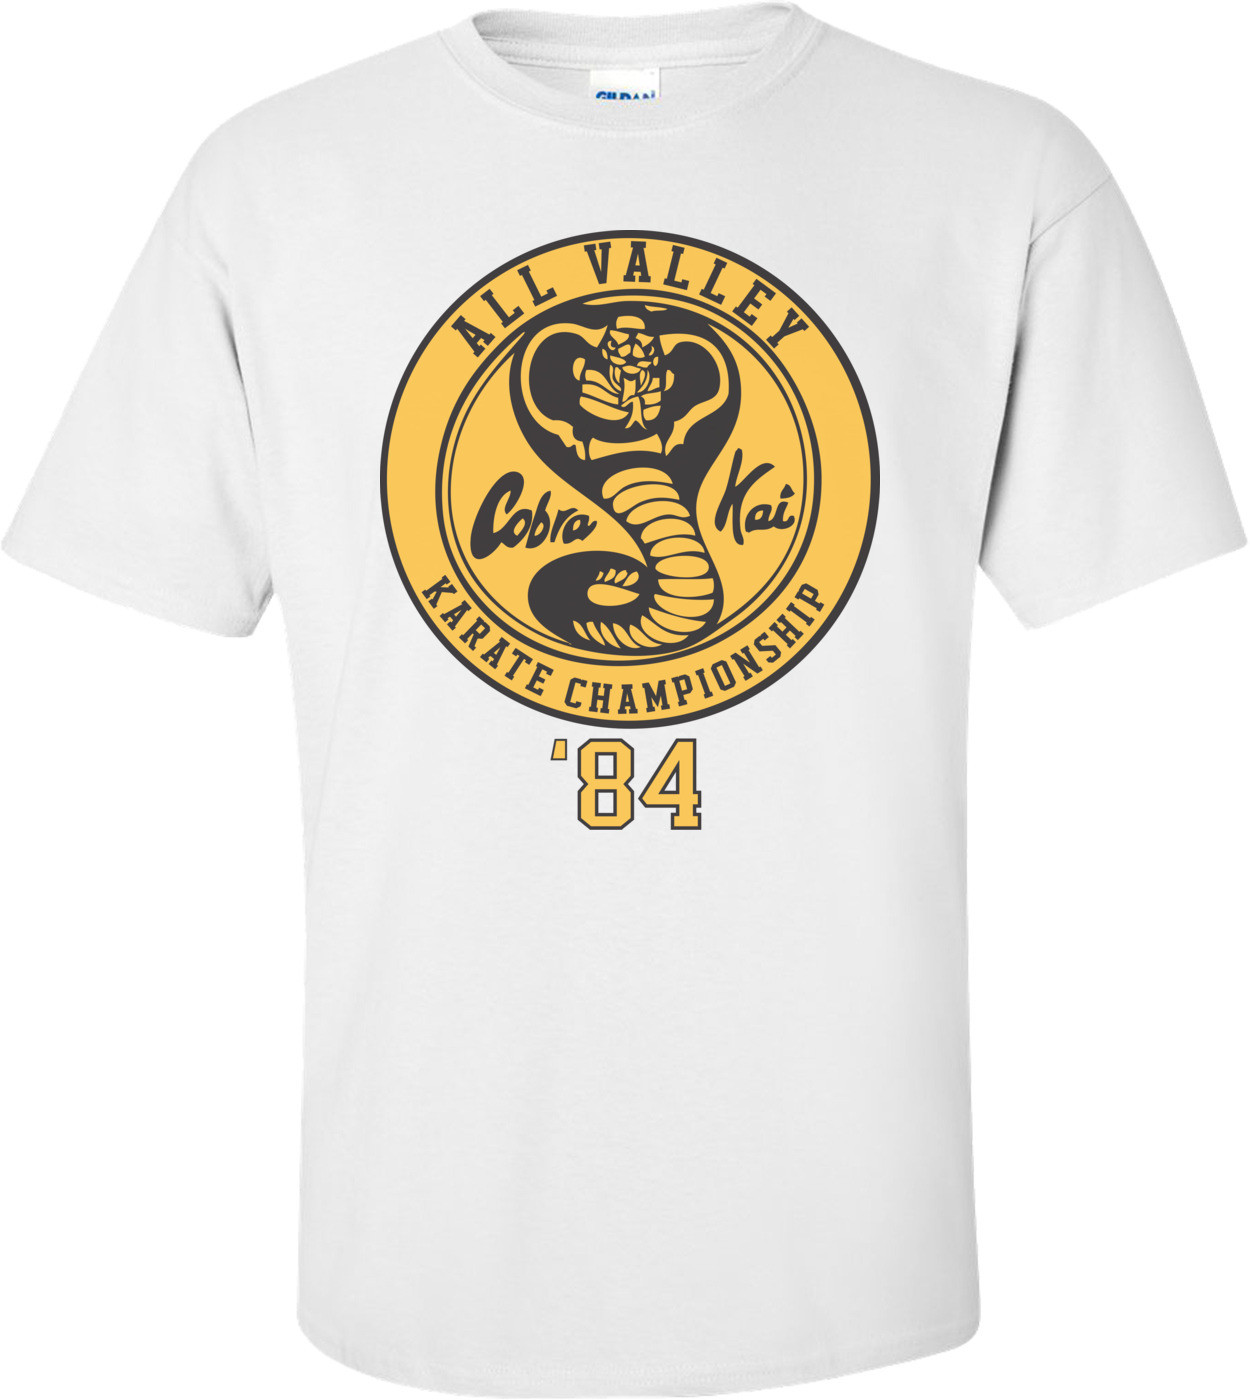 Cobra Kai - Karate Kid T-shirt